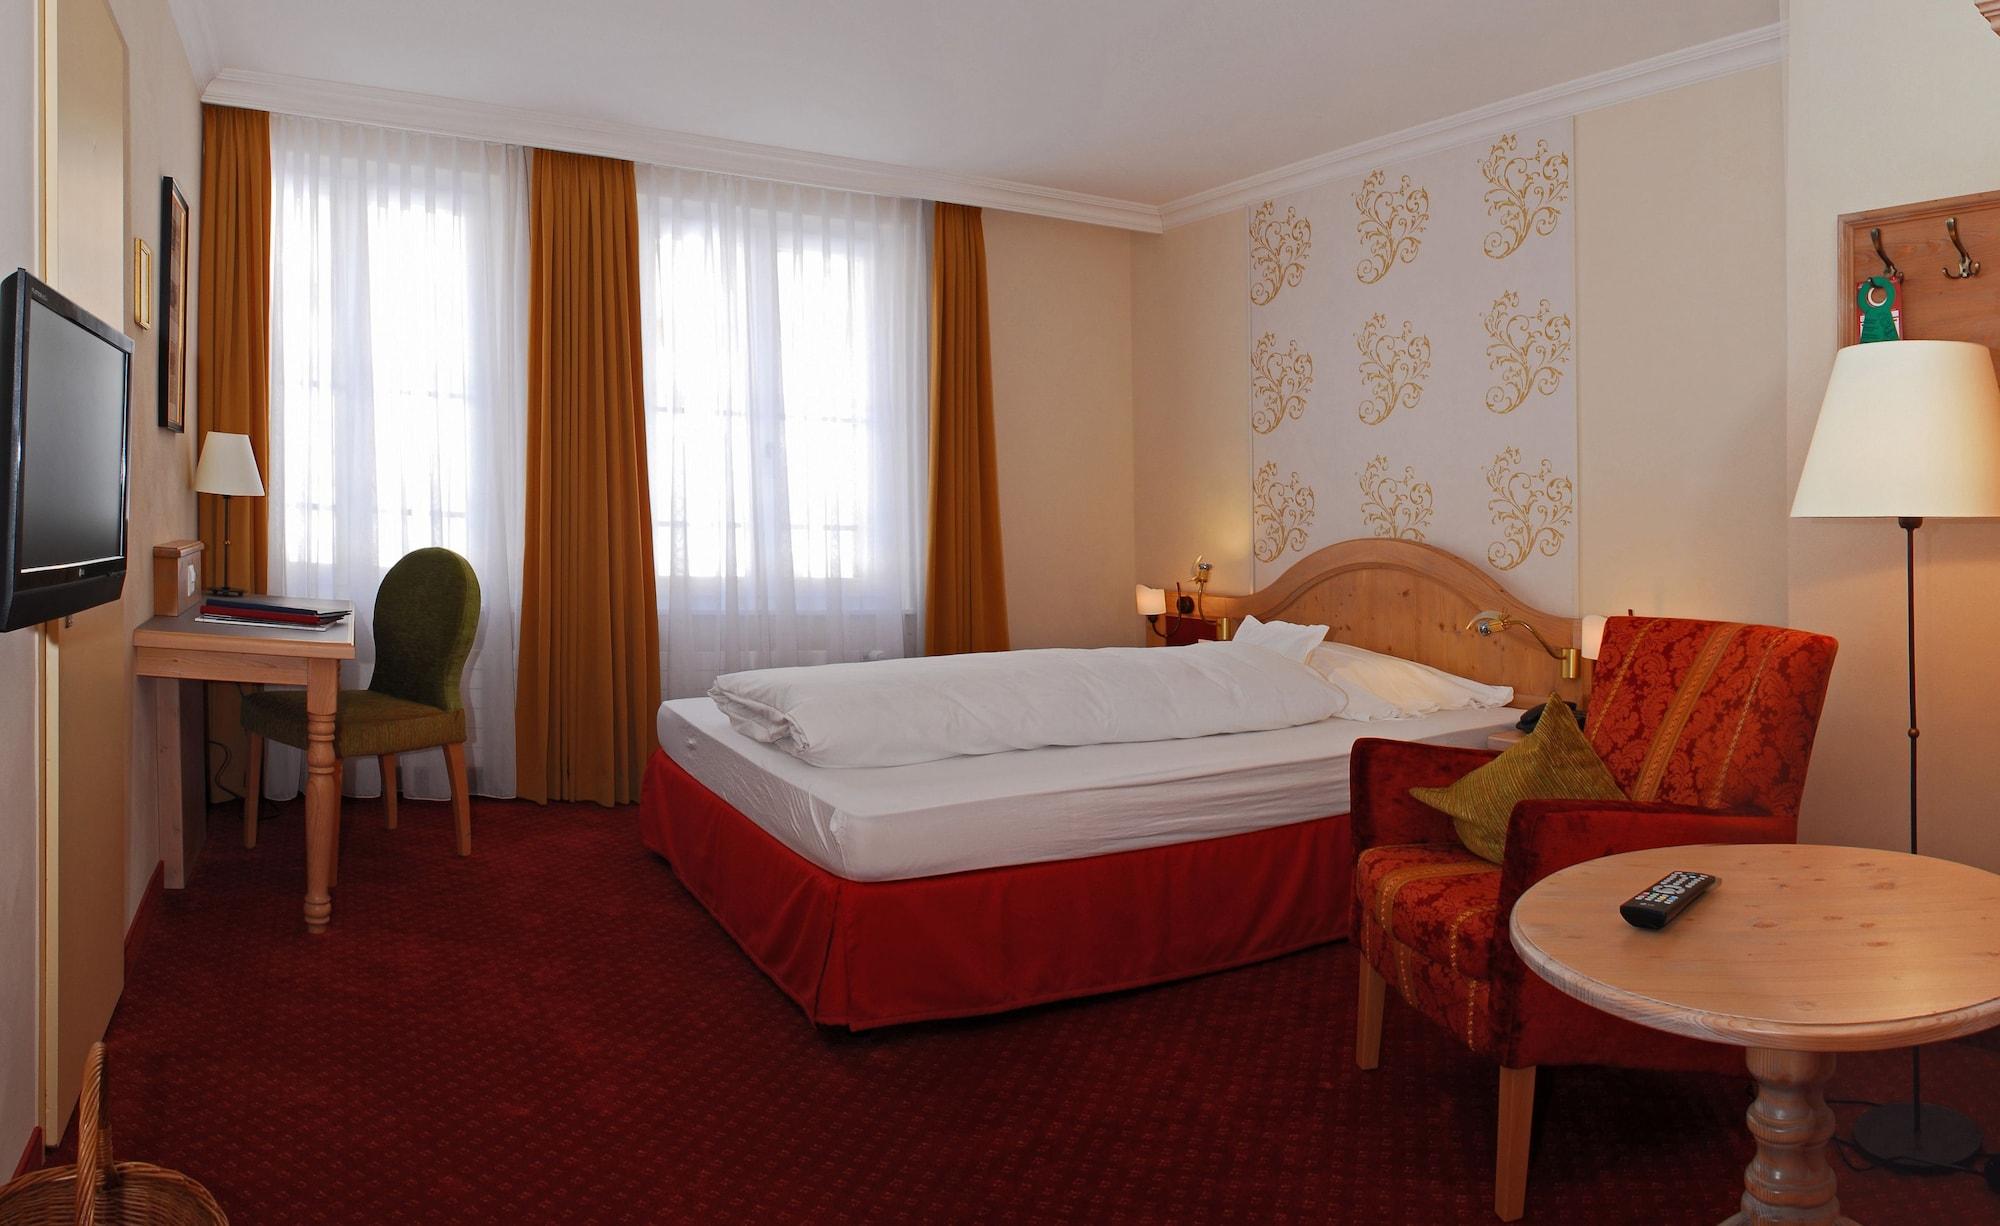 Romantik Hotel Schweizerhof Grindelwald Exterior photo